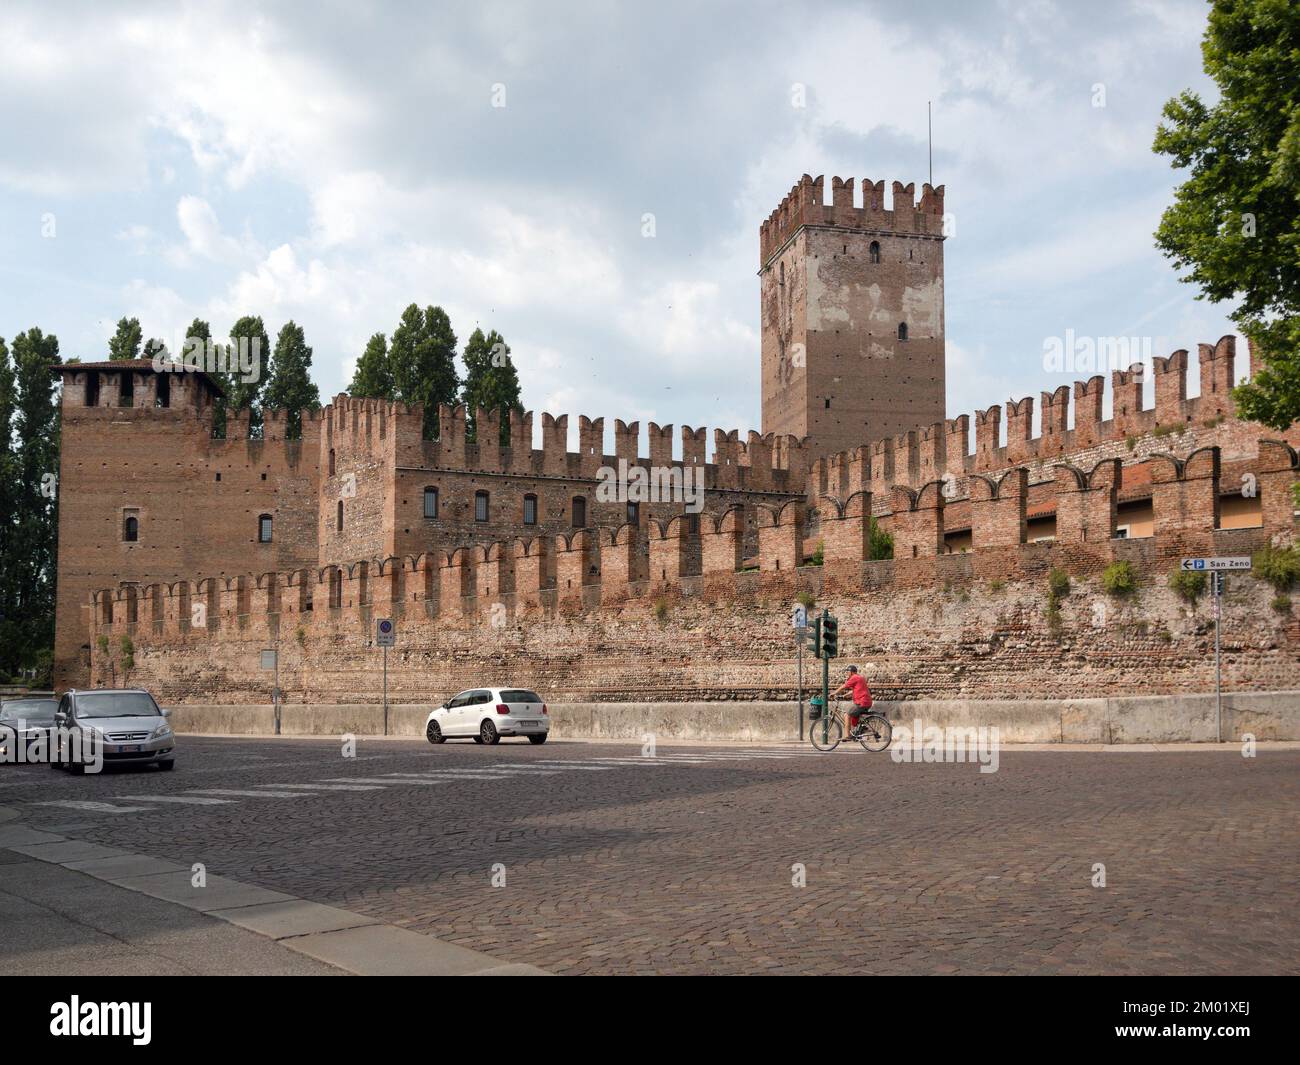 Tour et murs de Castelvecchio, le vieux château, le château du Moyen Age à Vérone, Italie Banque D'Images